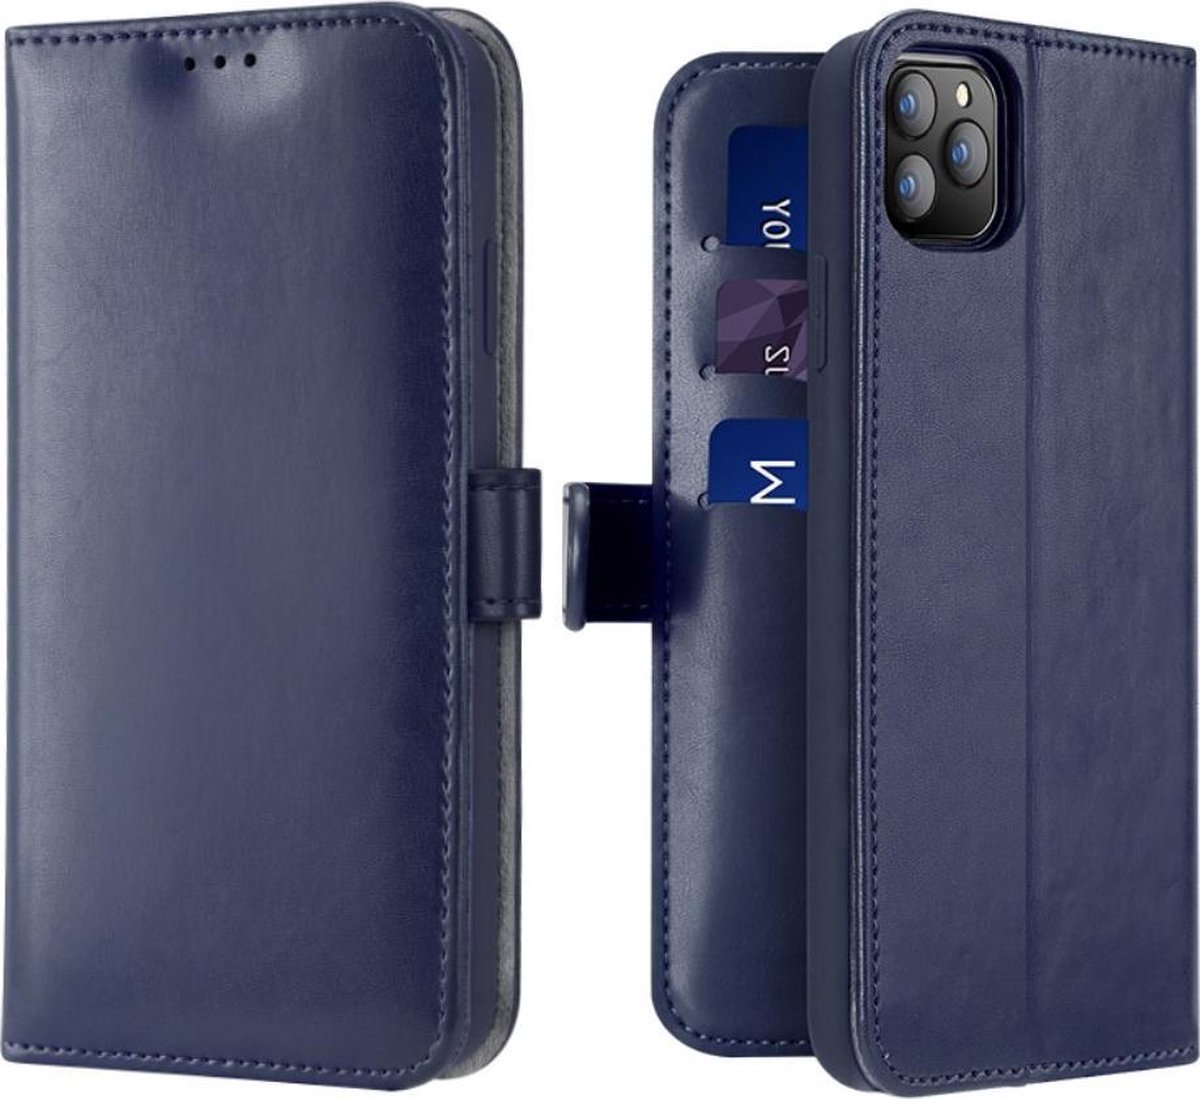 Lederen Wallet Case voor iPhone 11 Pro 5.8 inch- Blauw - Dux Ducis